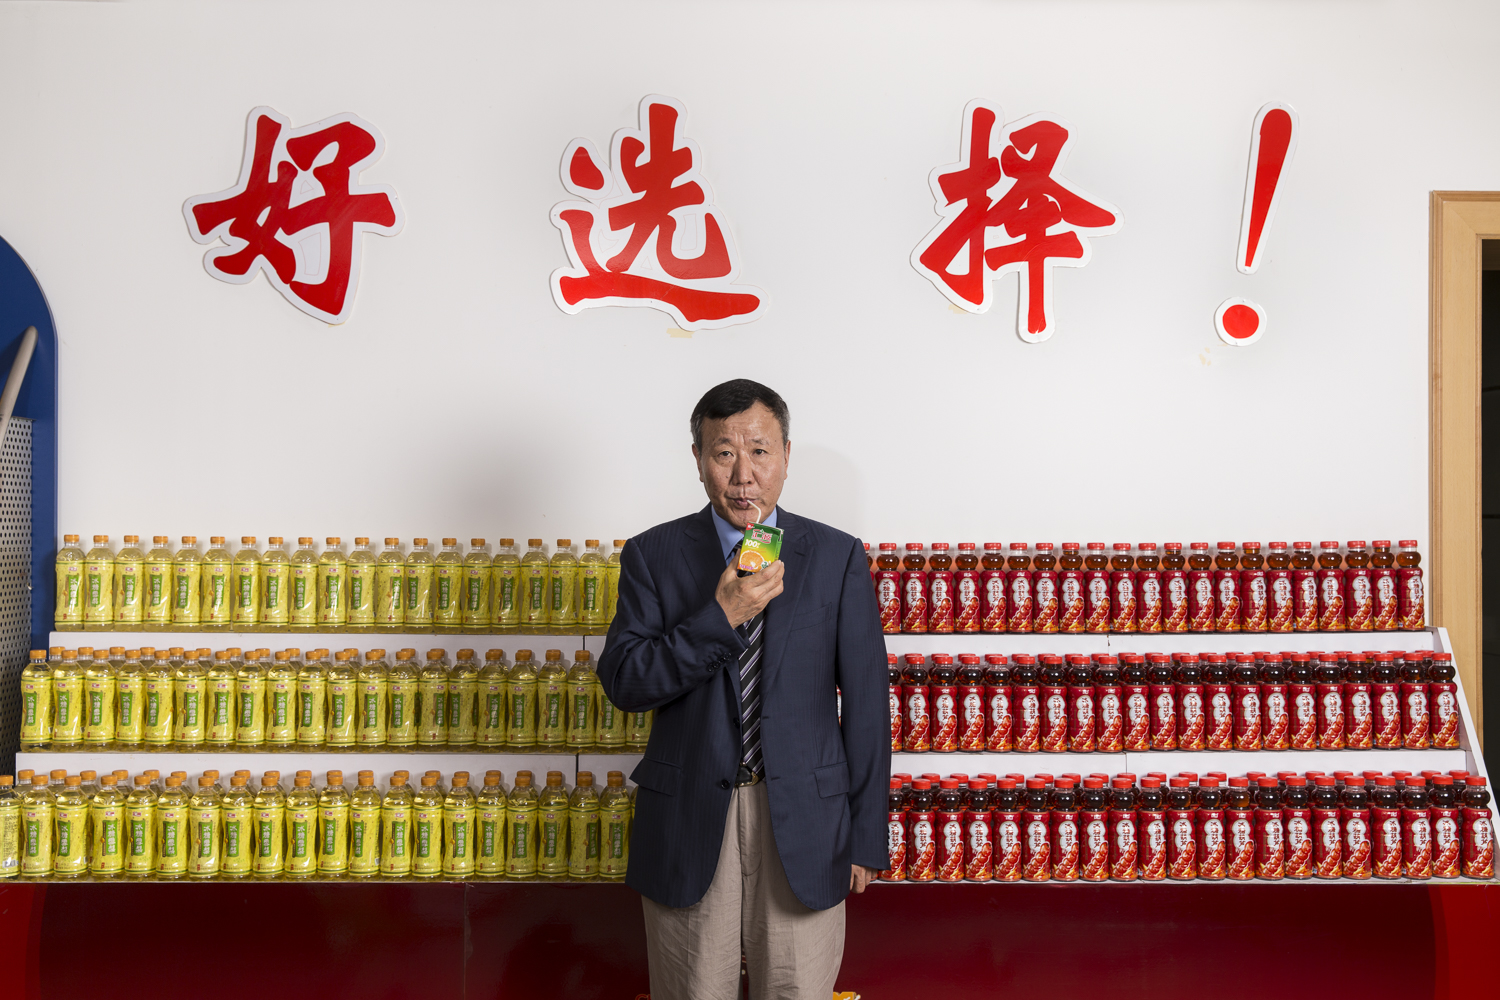 Zhu Xin Li  the company owner of the China Huiyuan Juice Group.